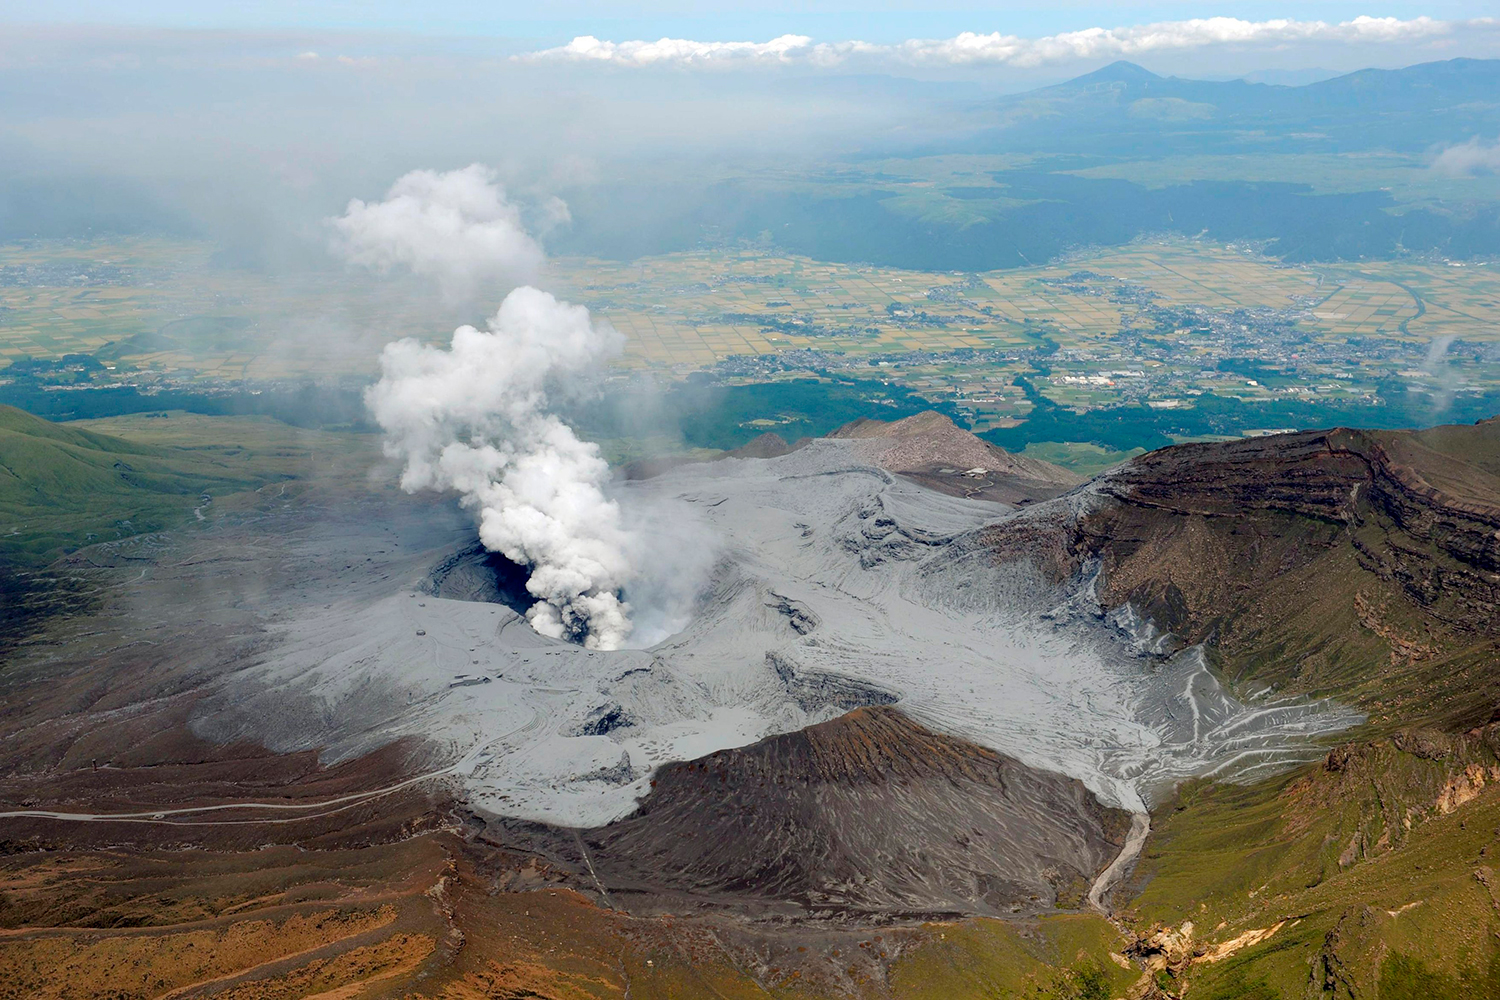 El supervolcán Monte Aso, el volcán activo más grande de Japón, entra en erupción